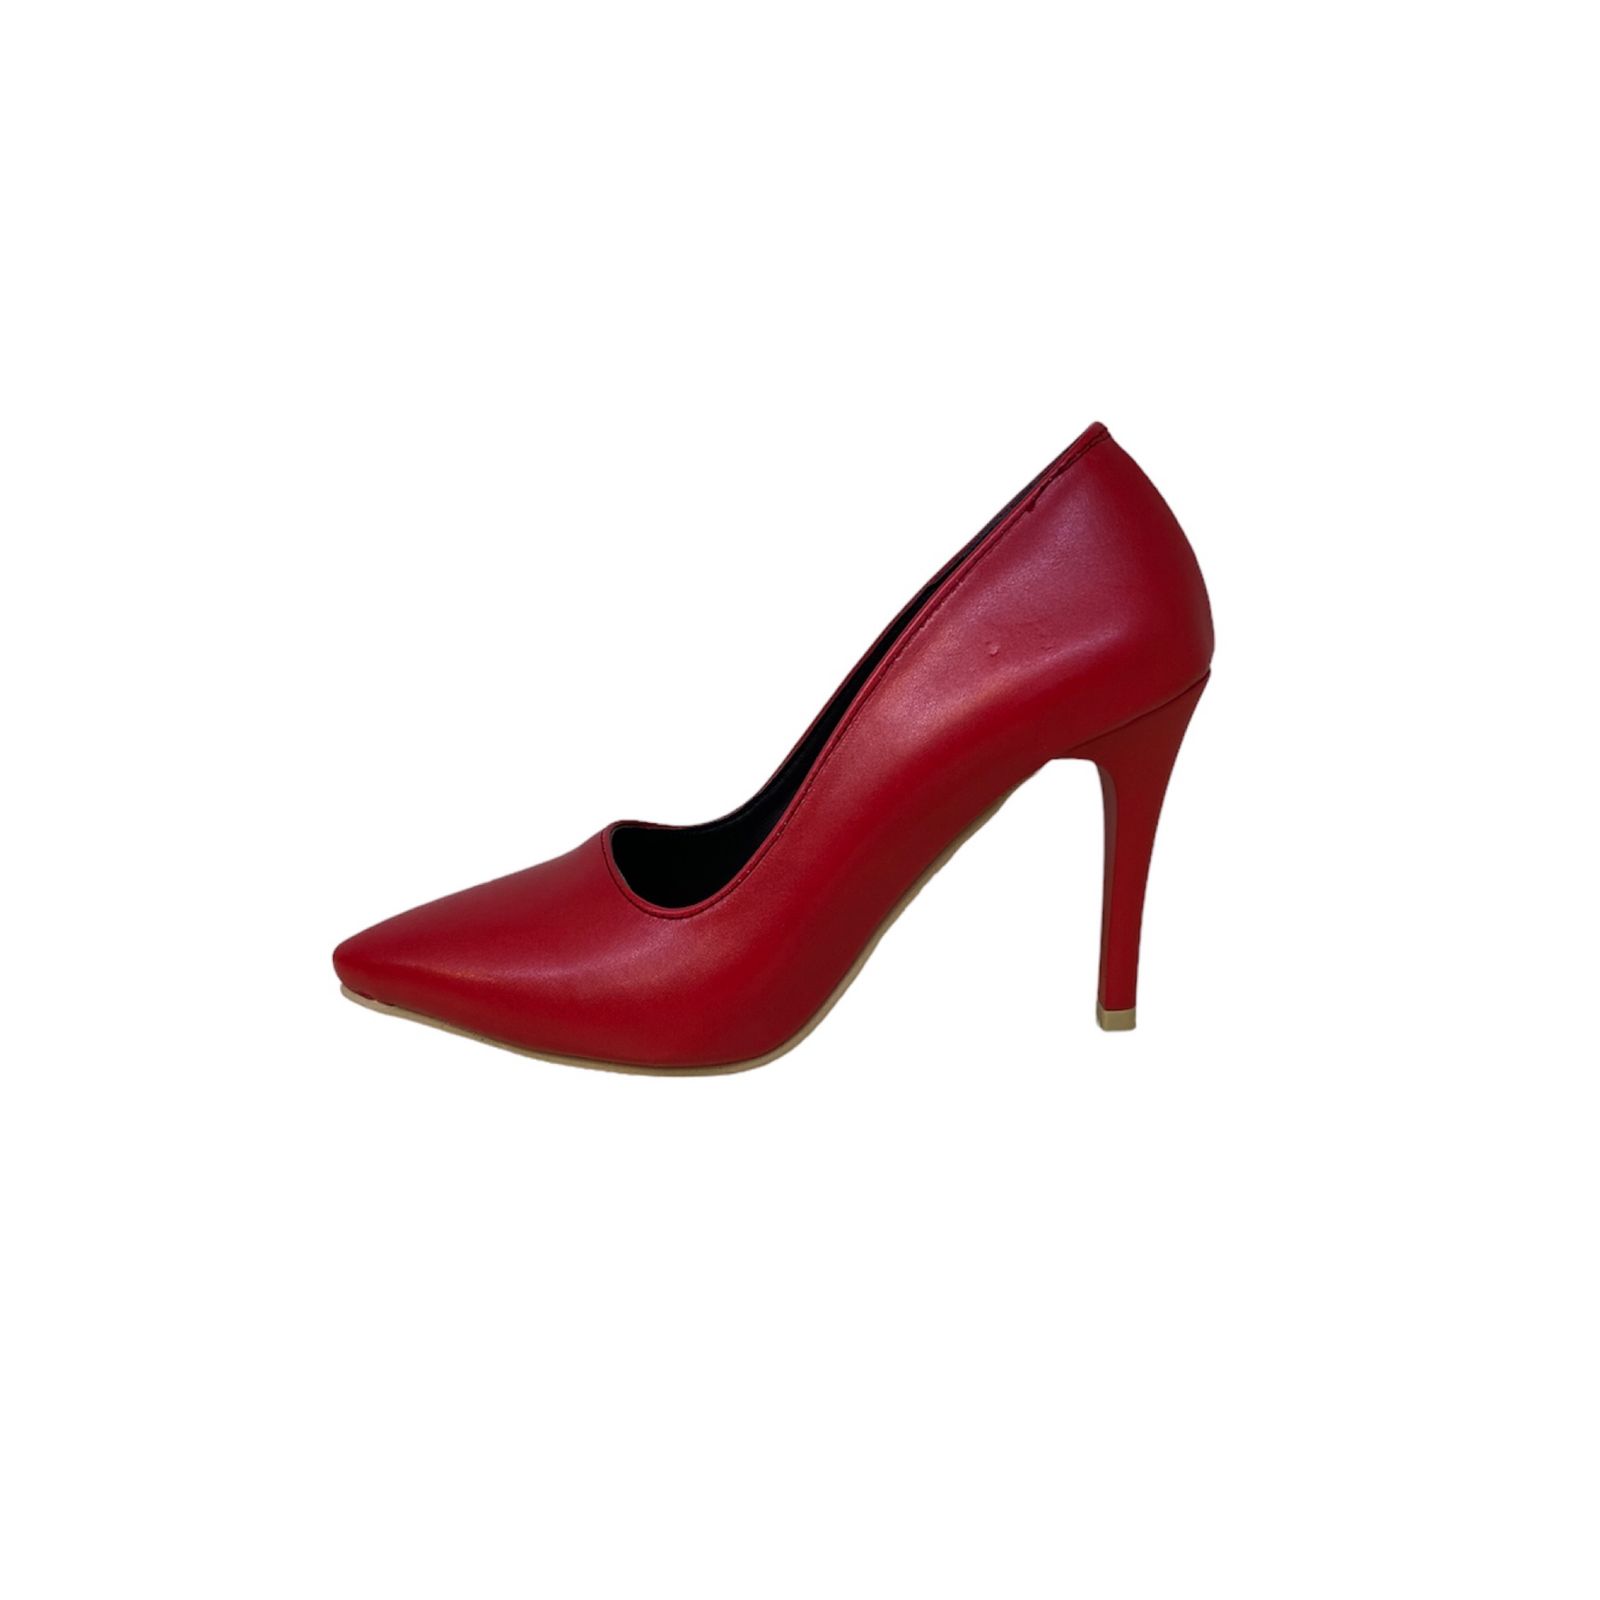 کفش زنانه مدل لودوشکا فرهاد بیاله رنگ قرمز -  - 1